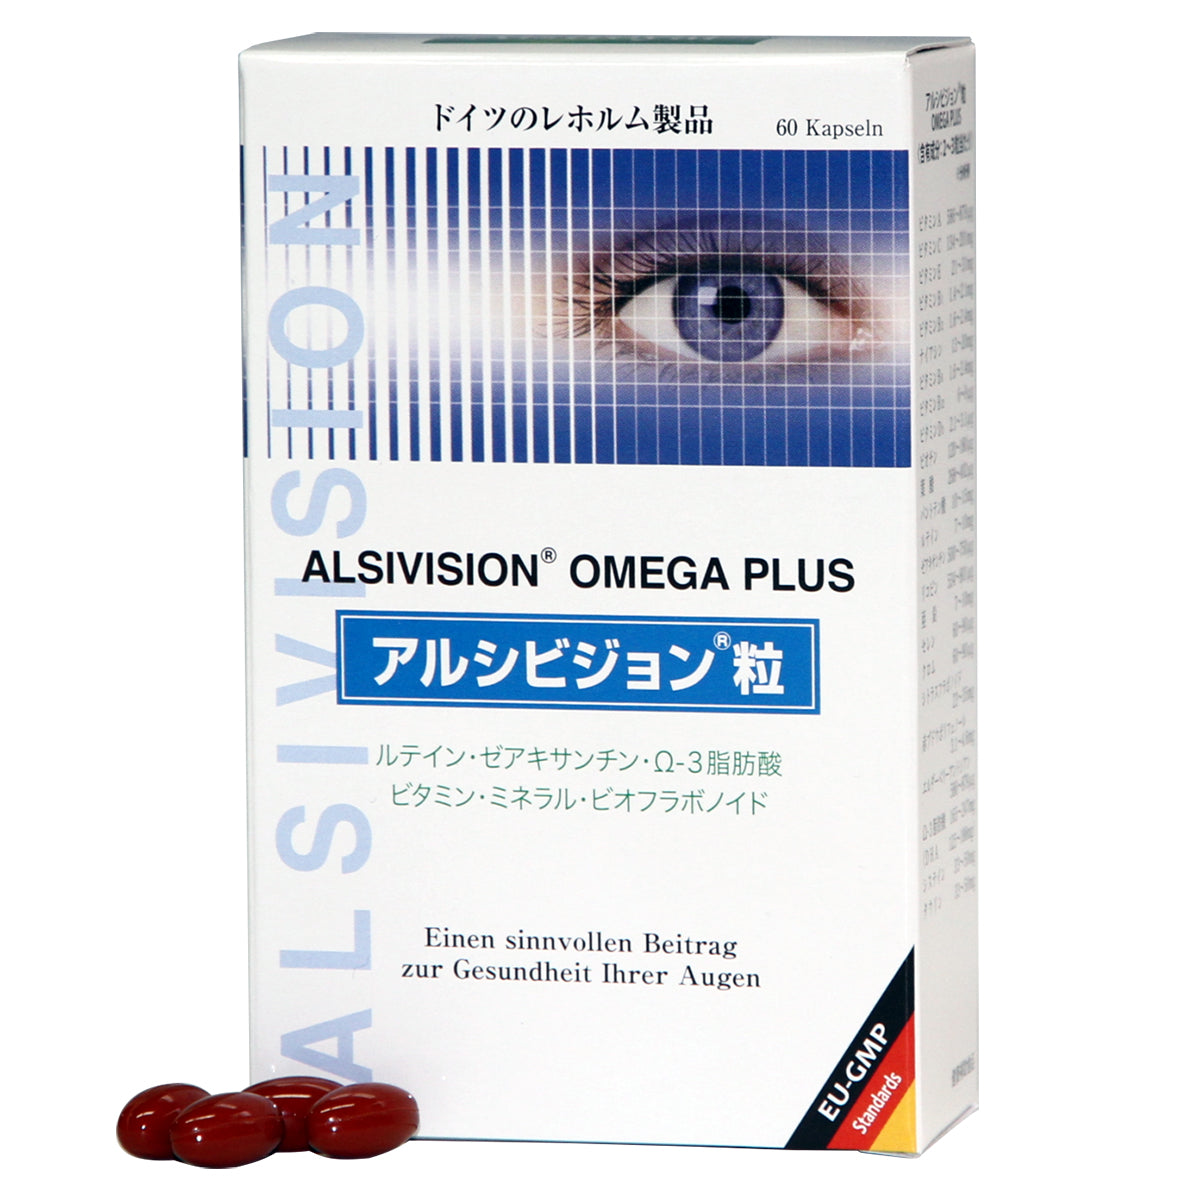 アルシビジョン粒  OMEGA PLUS ルティン ゼアキサンチン Ω-3脂肪酸